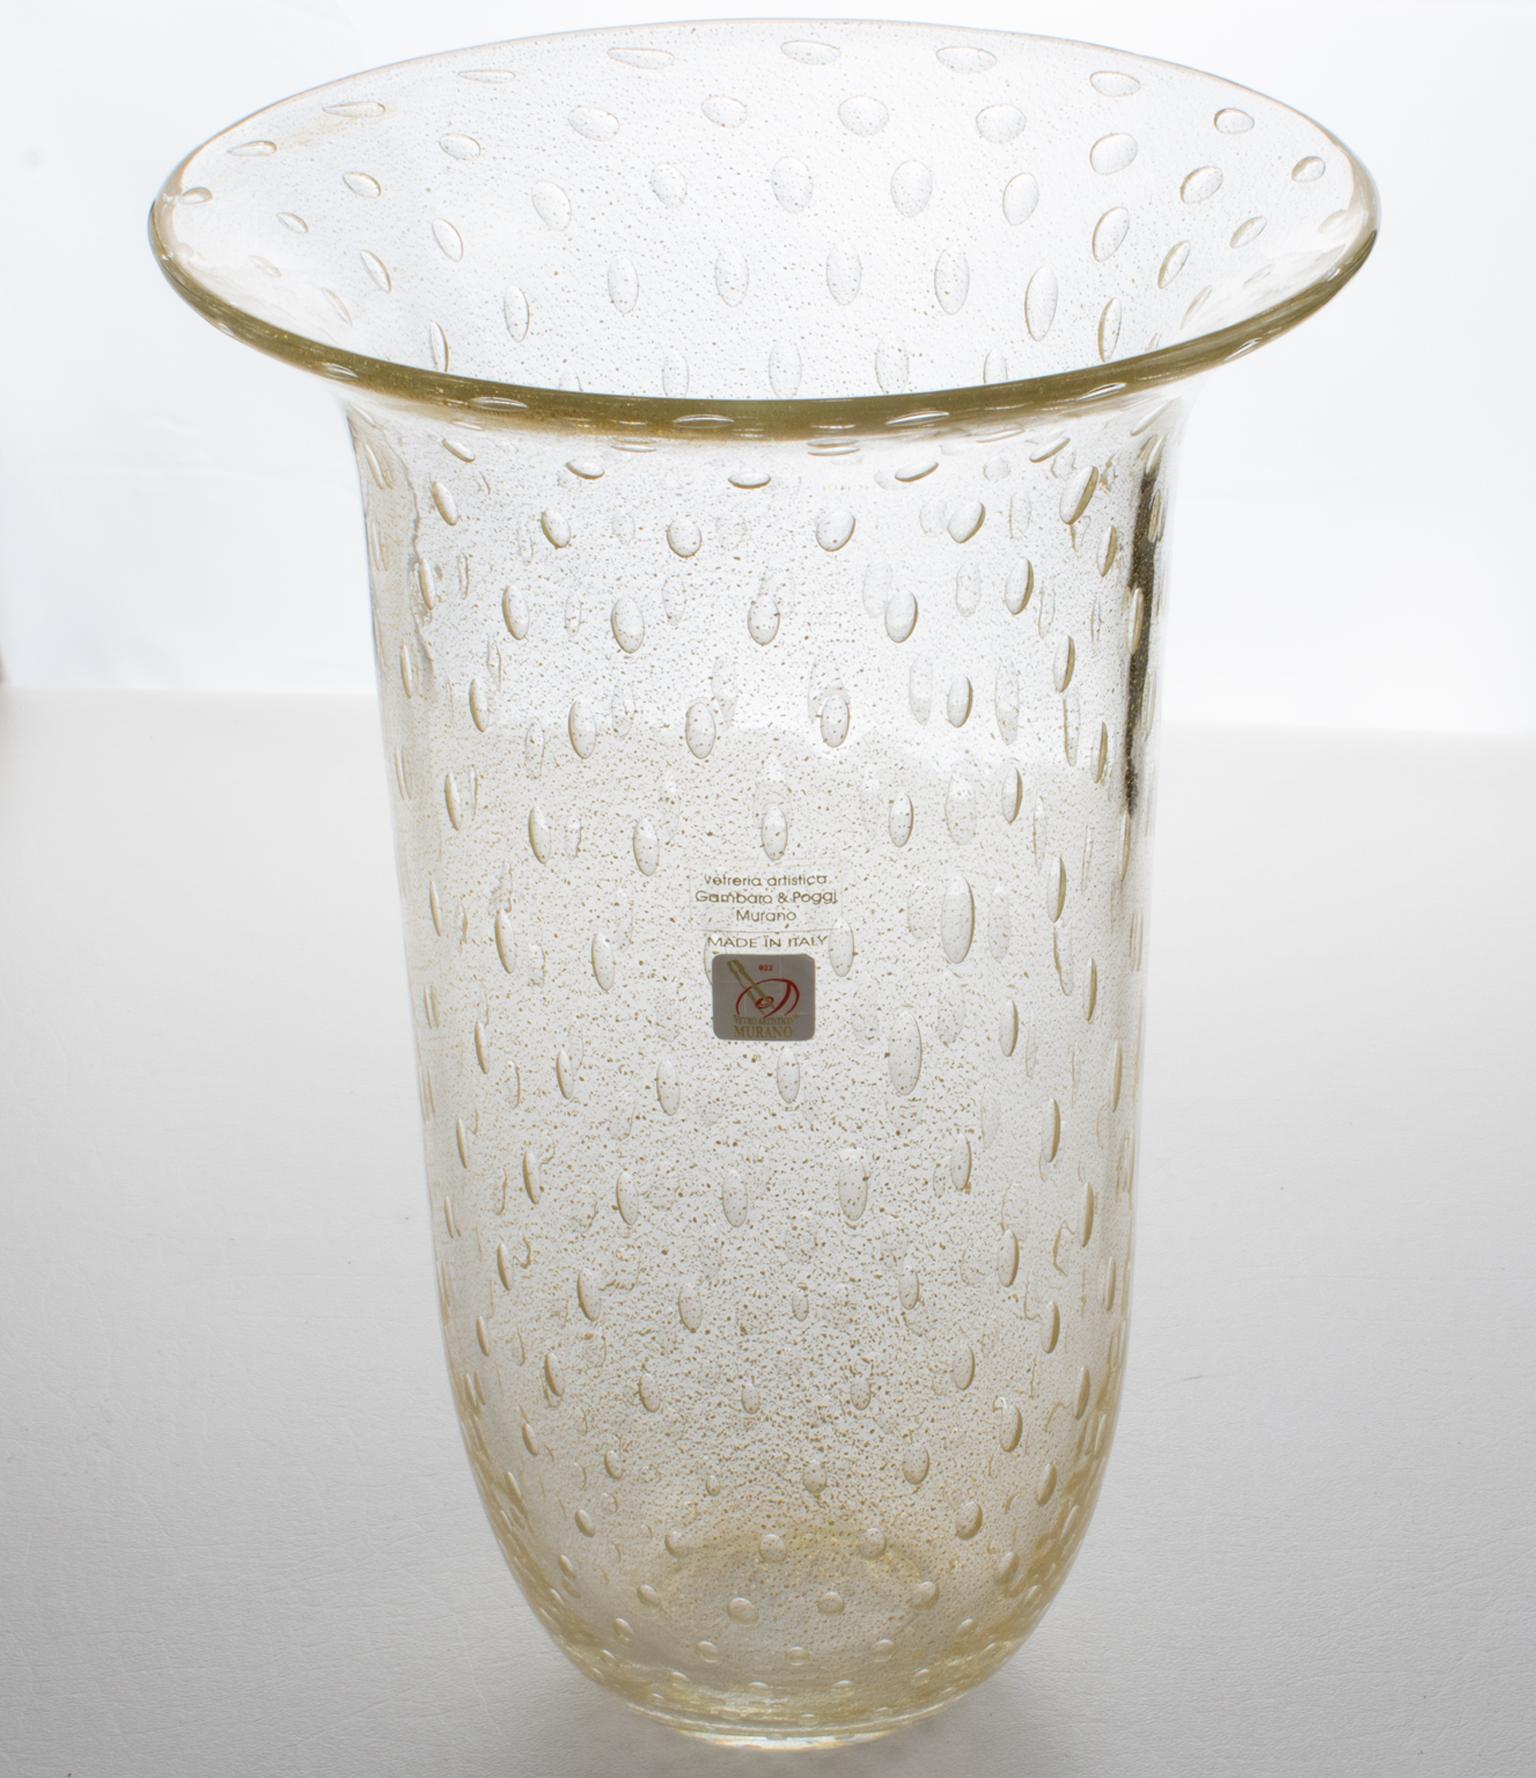 Gambaro & Poggi, Murano, ont fabriqué à la main ce magnifique vase en verre d'art italien soufflé. La haute tulipe sculpturale présente des inclusions de paillettes d'or infusées et la technique de la 